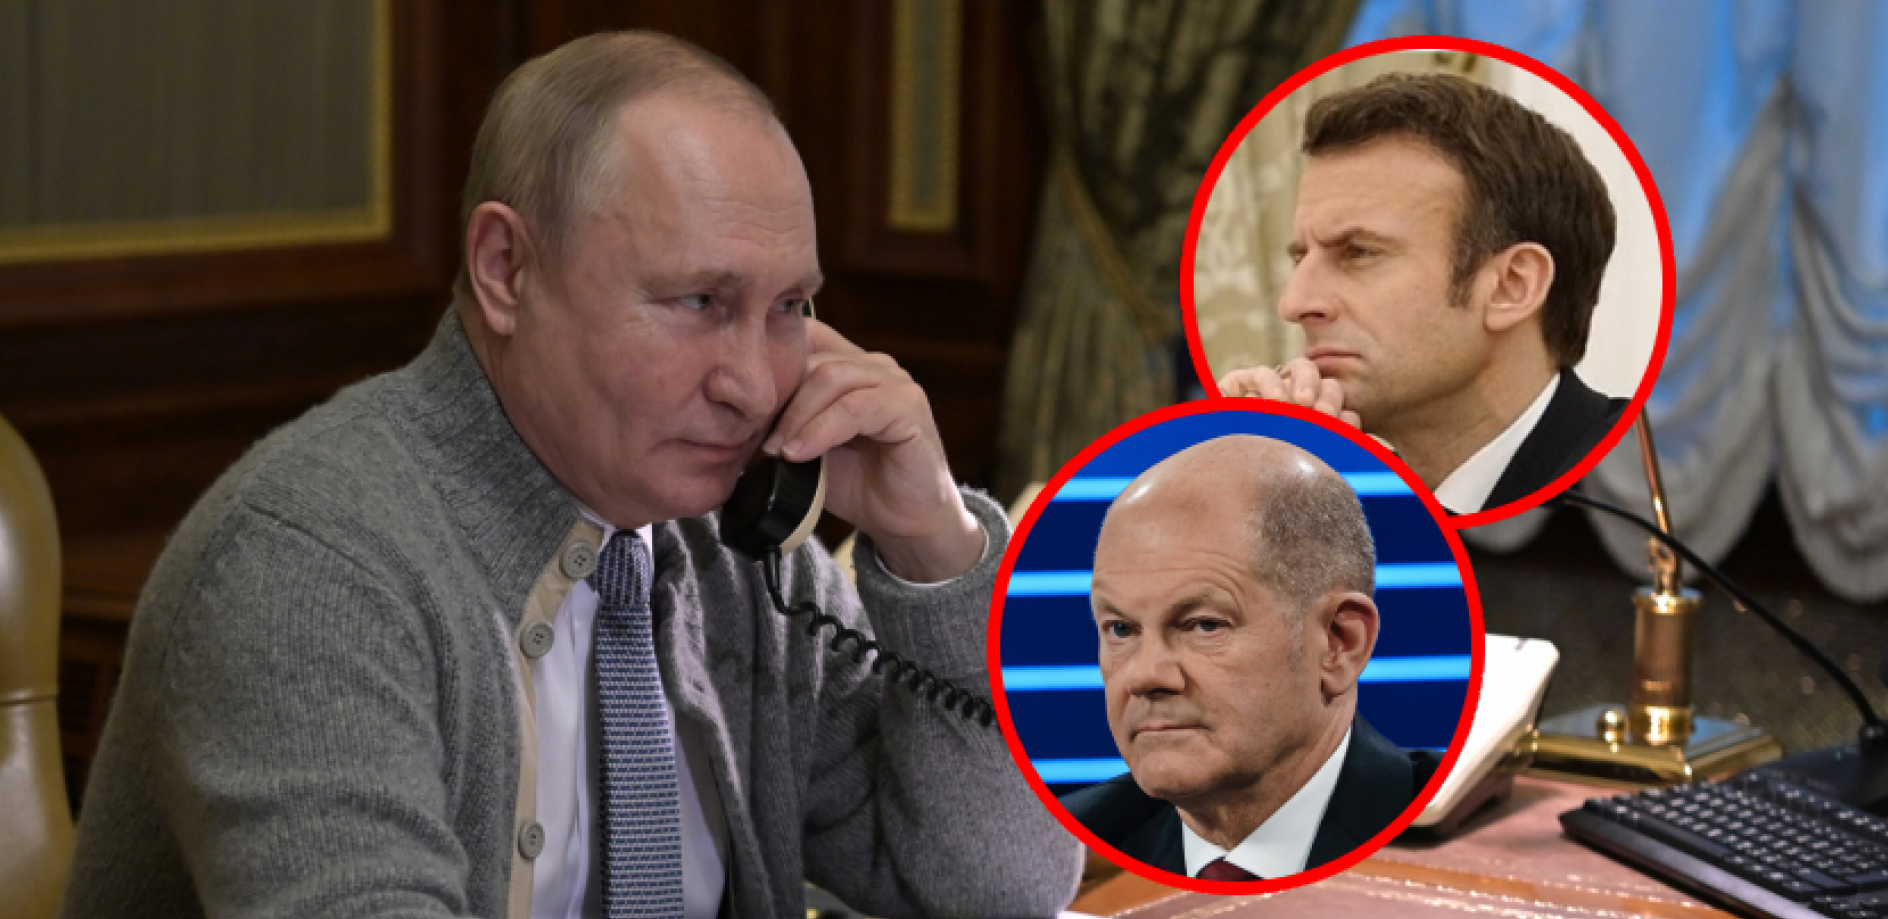 NEOČEKIVANI POTEZ RUSIJE Putin razgovarao sa Makronom i Šolcom, važna odluka pred svetskim liderima